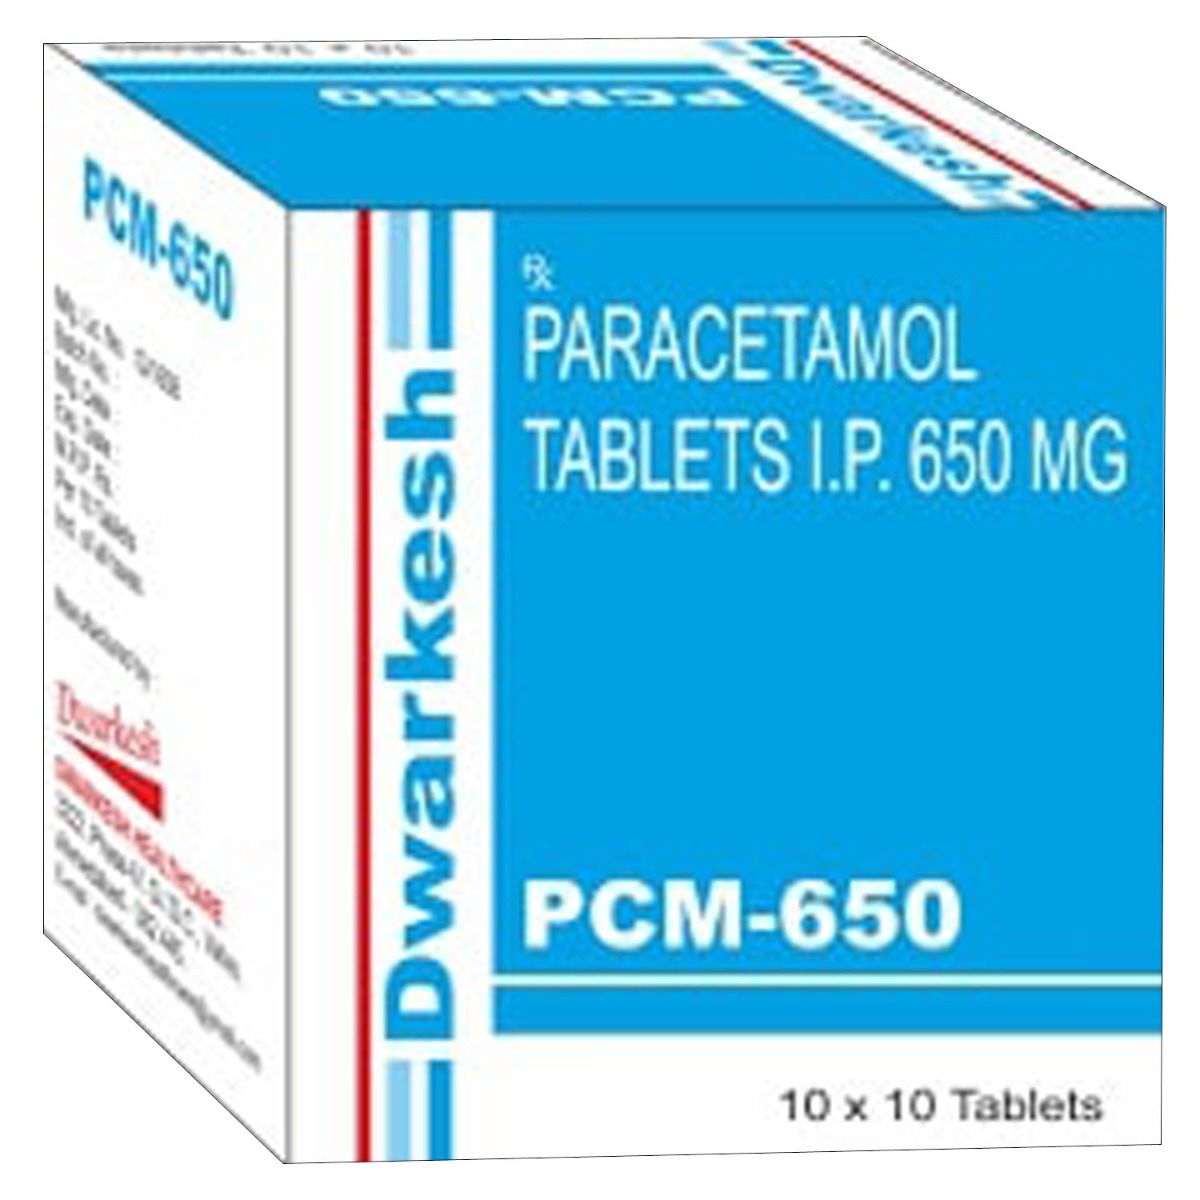 Pcm medicine